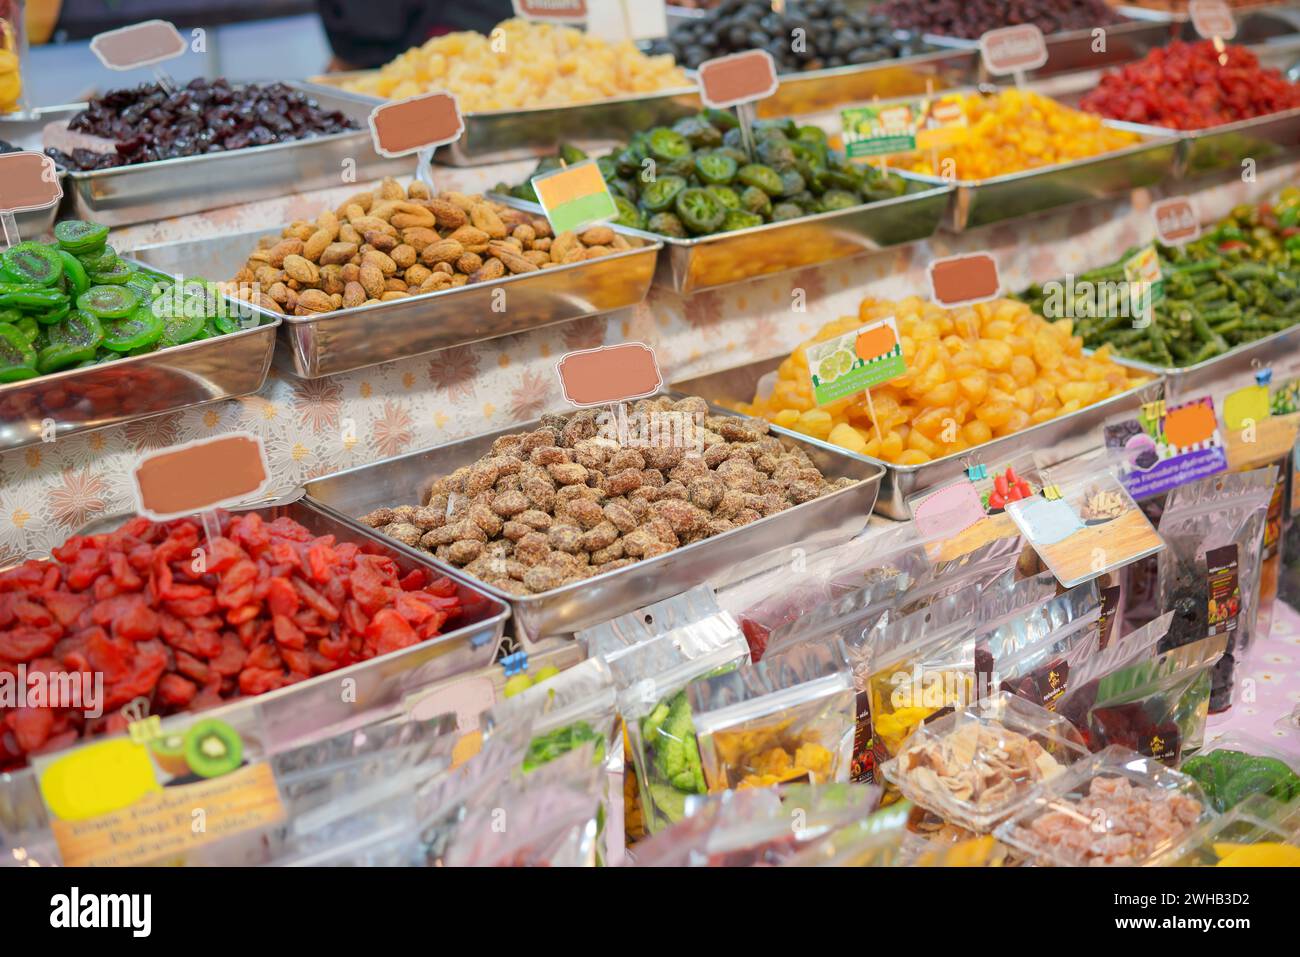 Lebendige und farbenfrohe Auswahl an getrockneten Früchten und Nüssen, die in Metallschalen auf einem Markt präsentiert werden und die Vielfalt und Attraktivität von gesunden Snack Optio unterstreichen Stockfoto